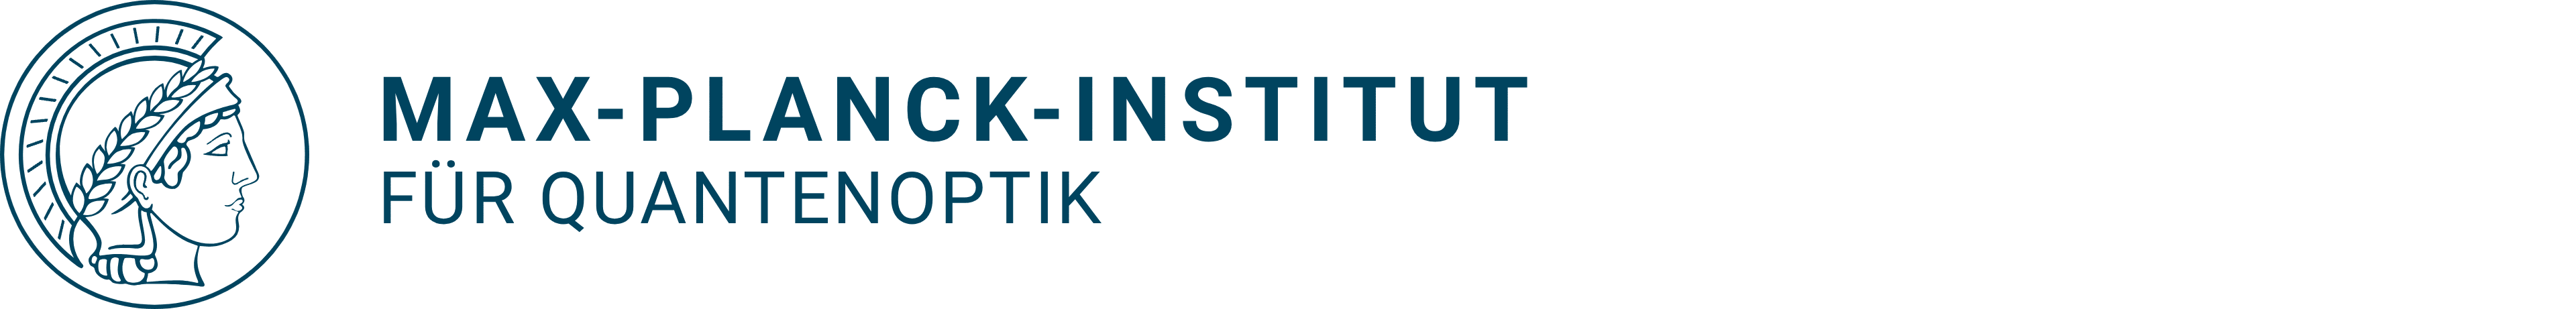 Max-Planck-Institut für Quantenoptik logo